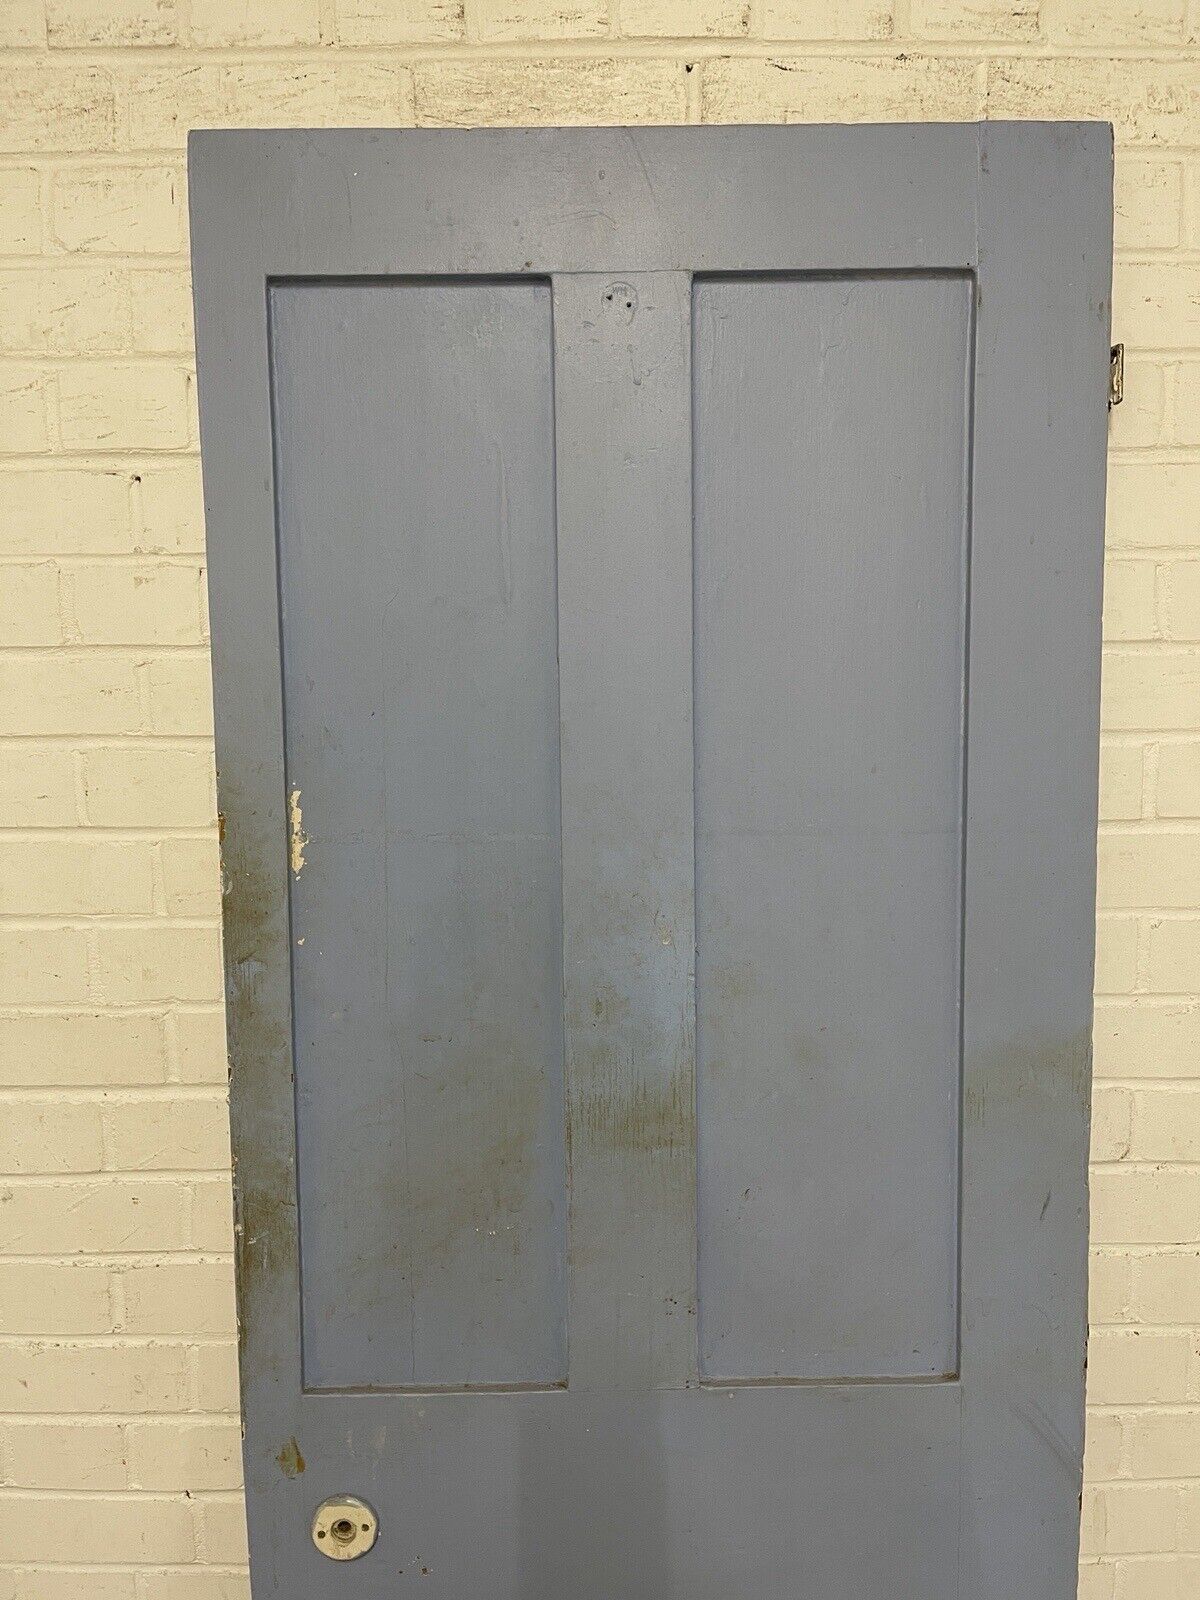 Rare Reclaimed Victorian Pine Internal 4 panel Door 1930 x 710mm Or 705mm